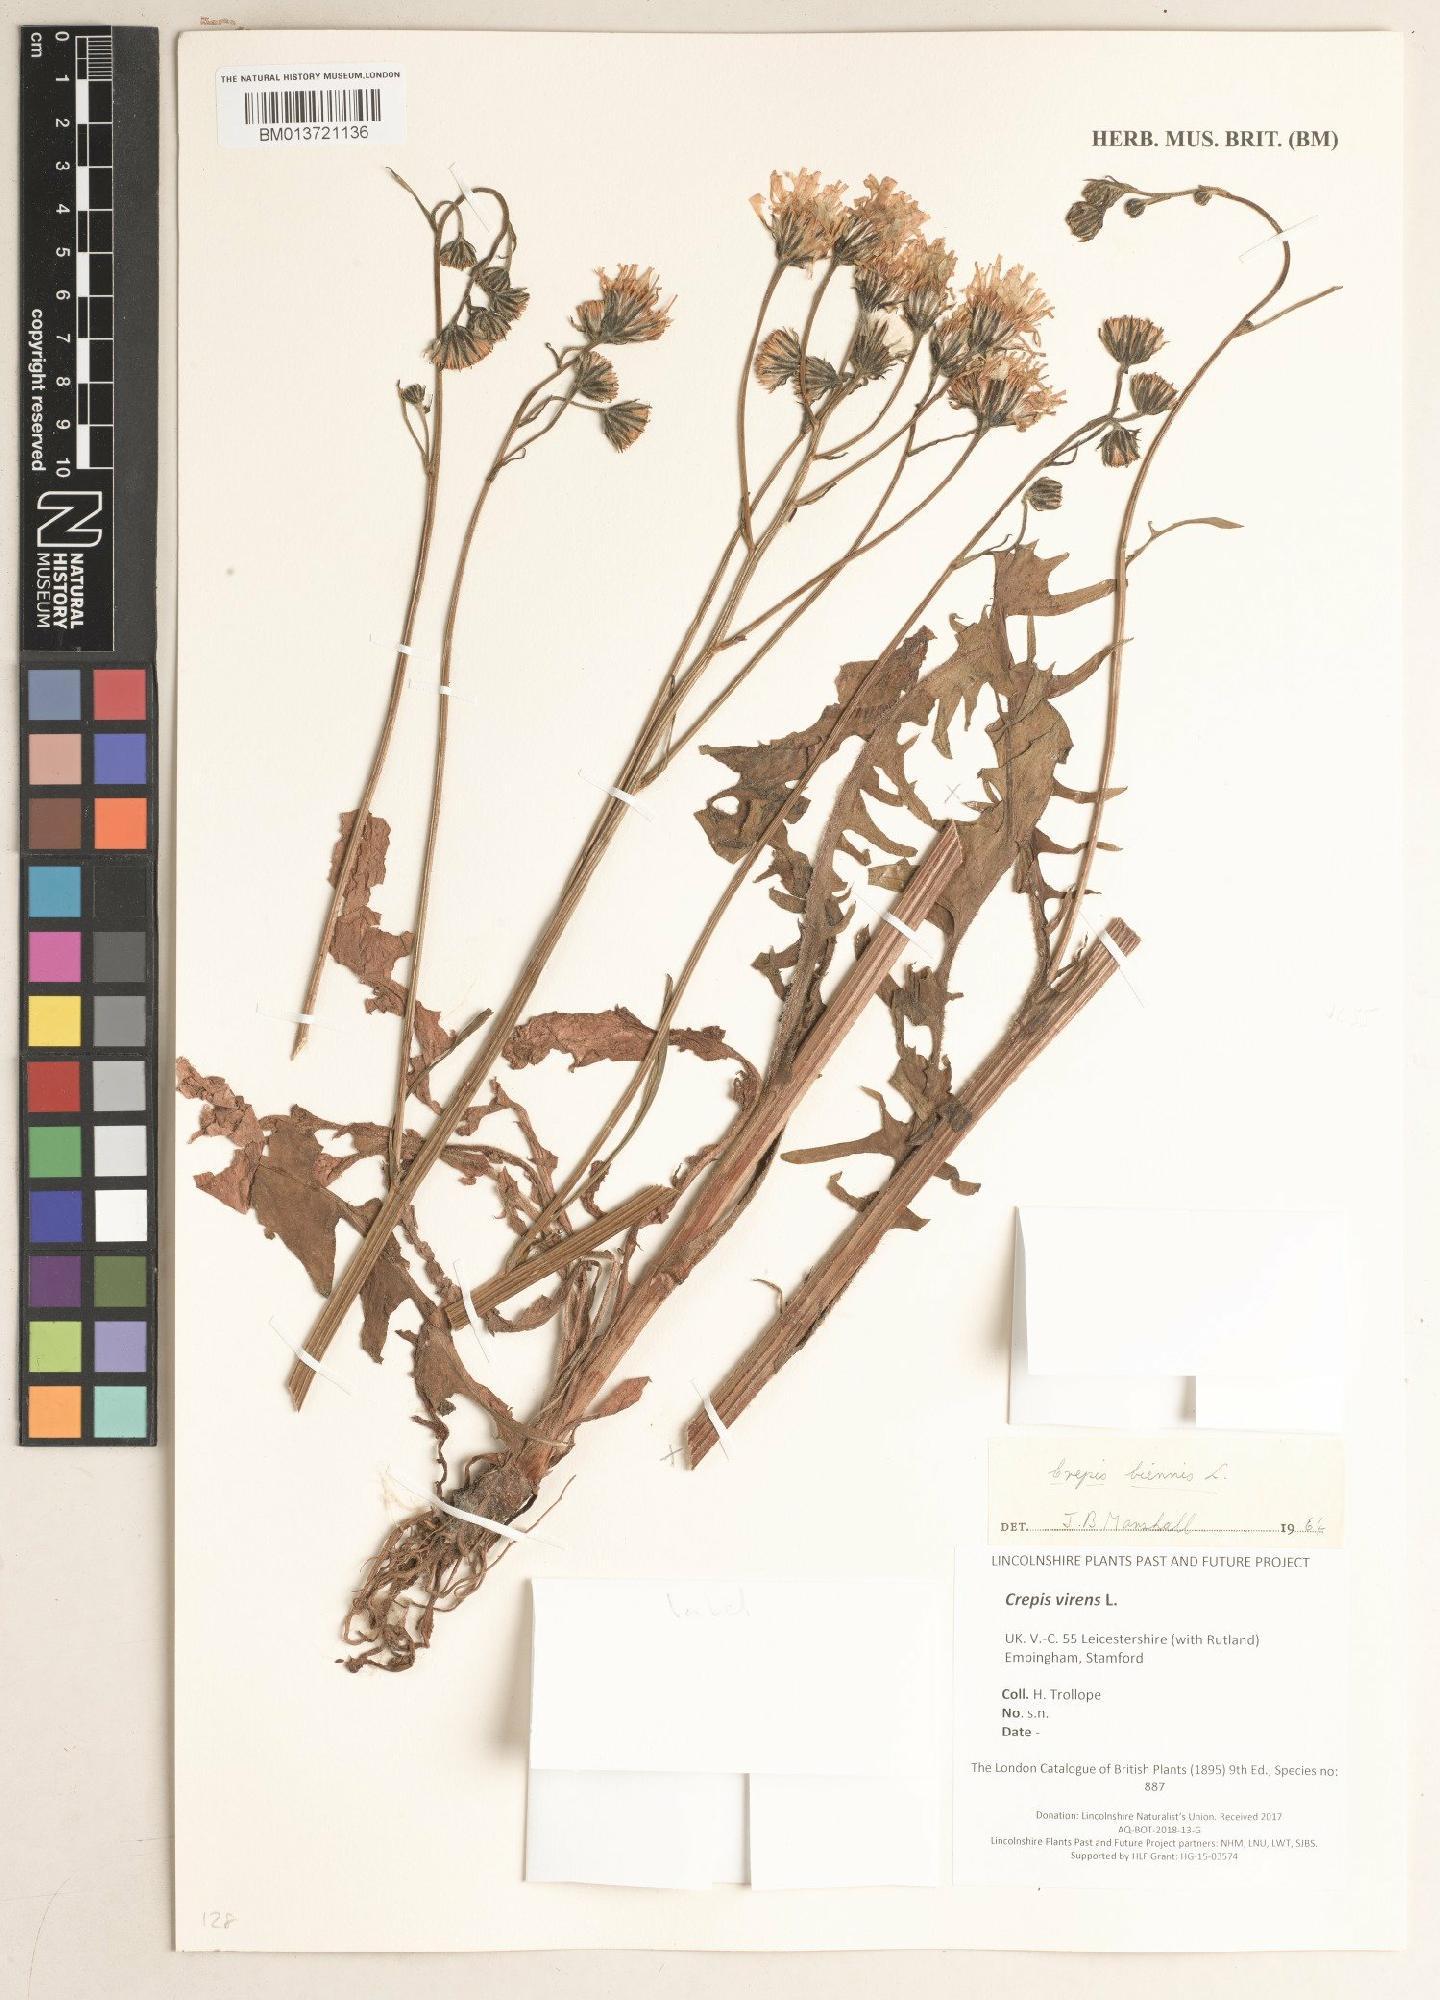 To NHMUK collection (Crepis virens L.; NHMUK:ecatalogue:9101915)